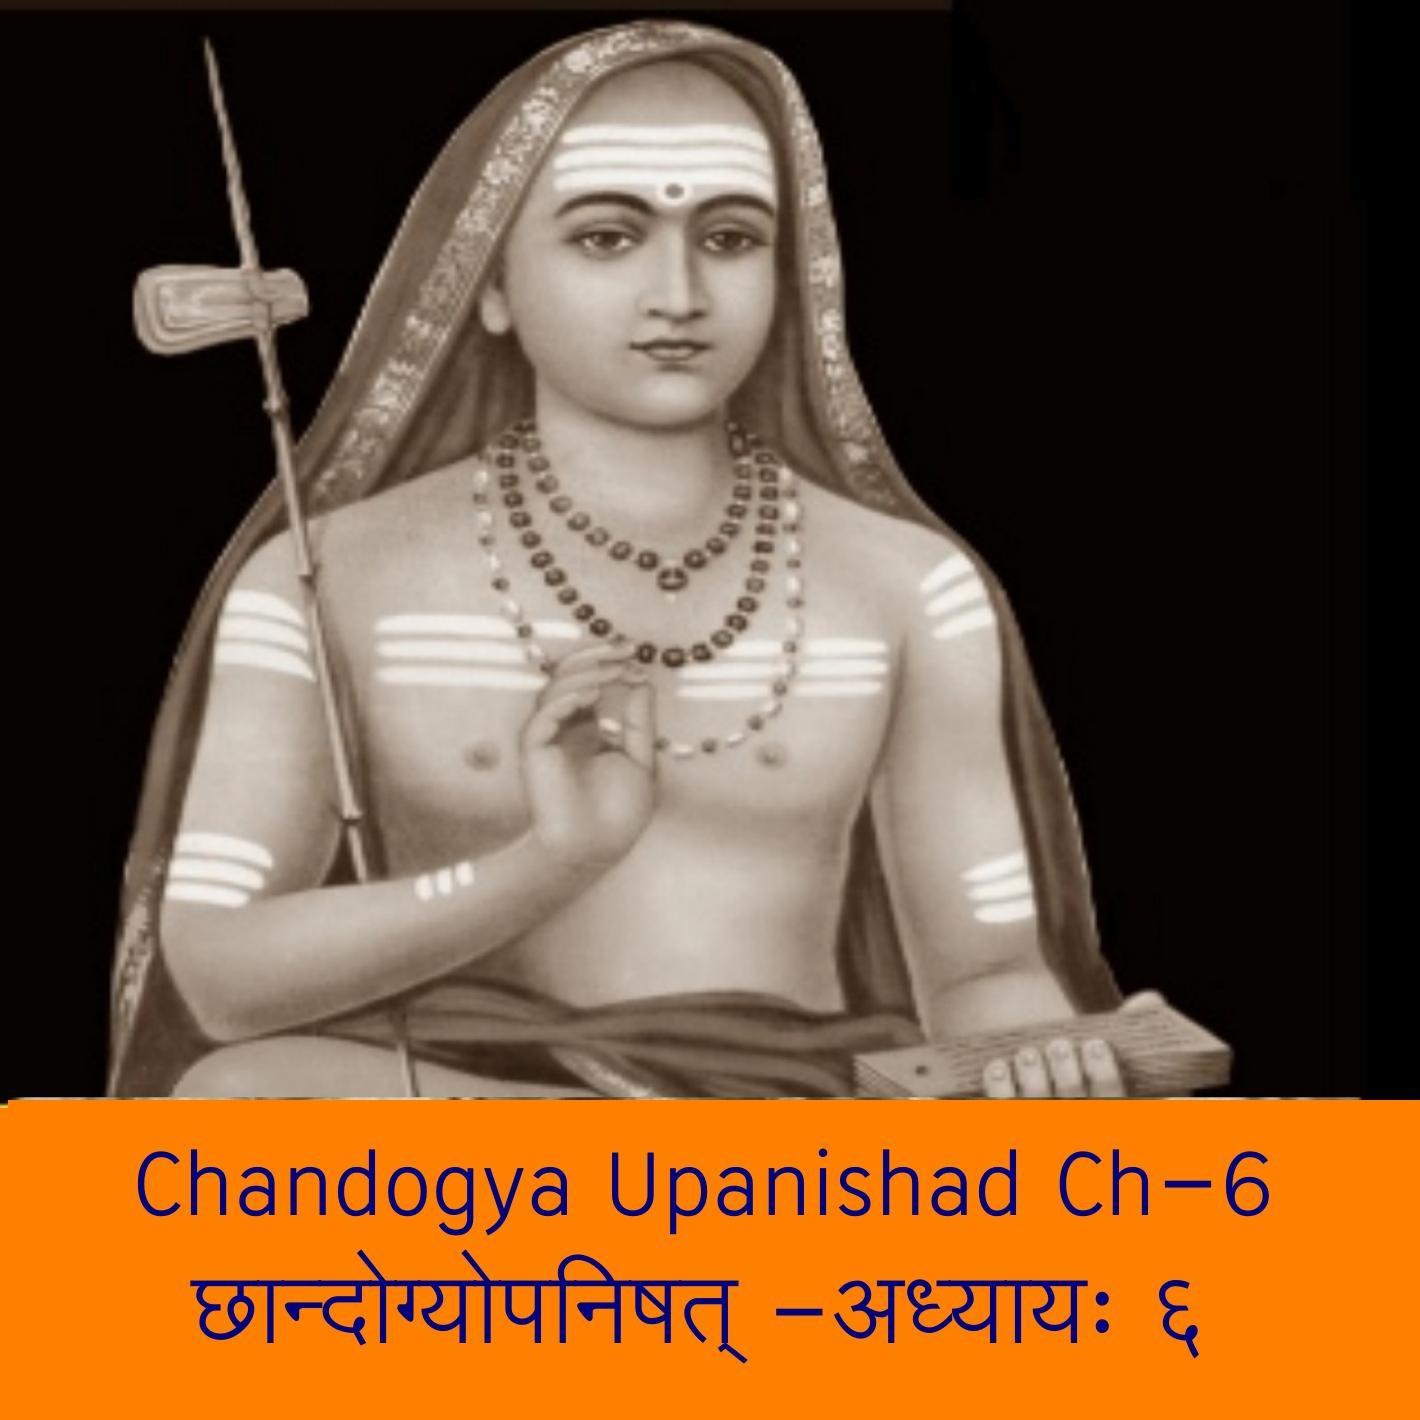 Chandogya Upaniishad Chapter-6